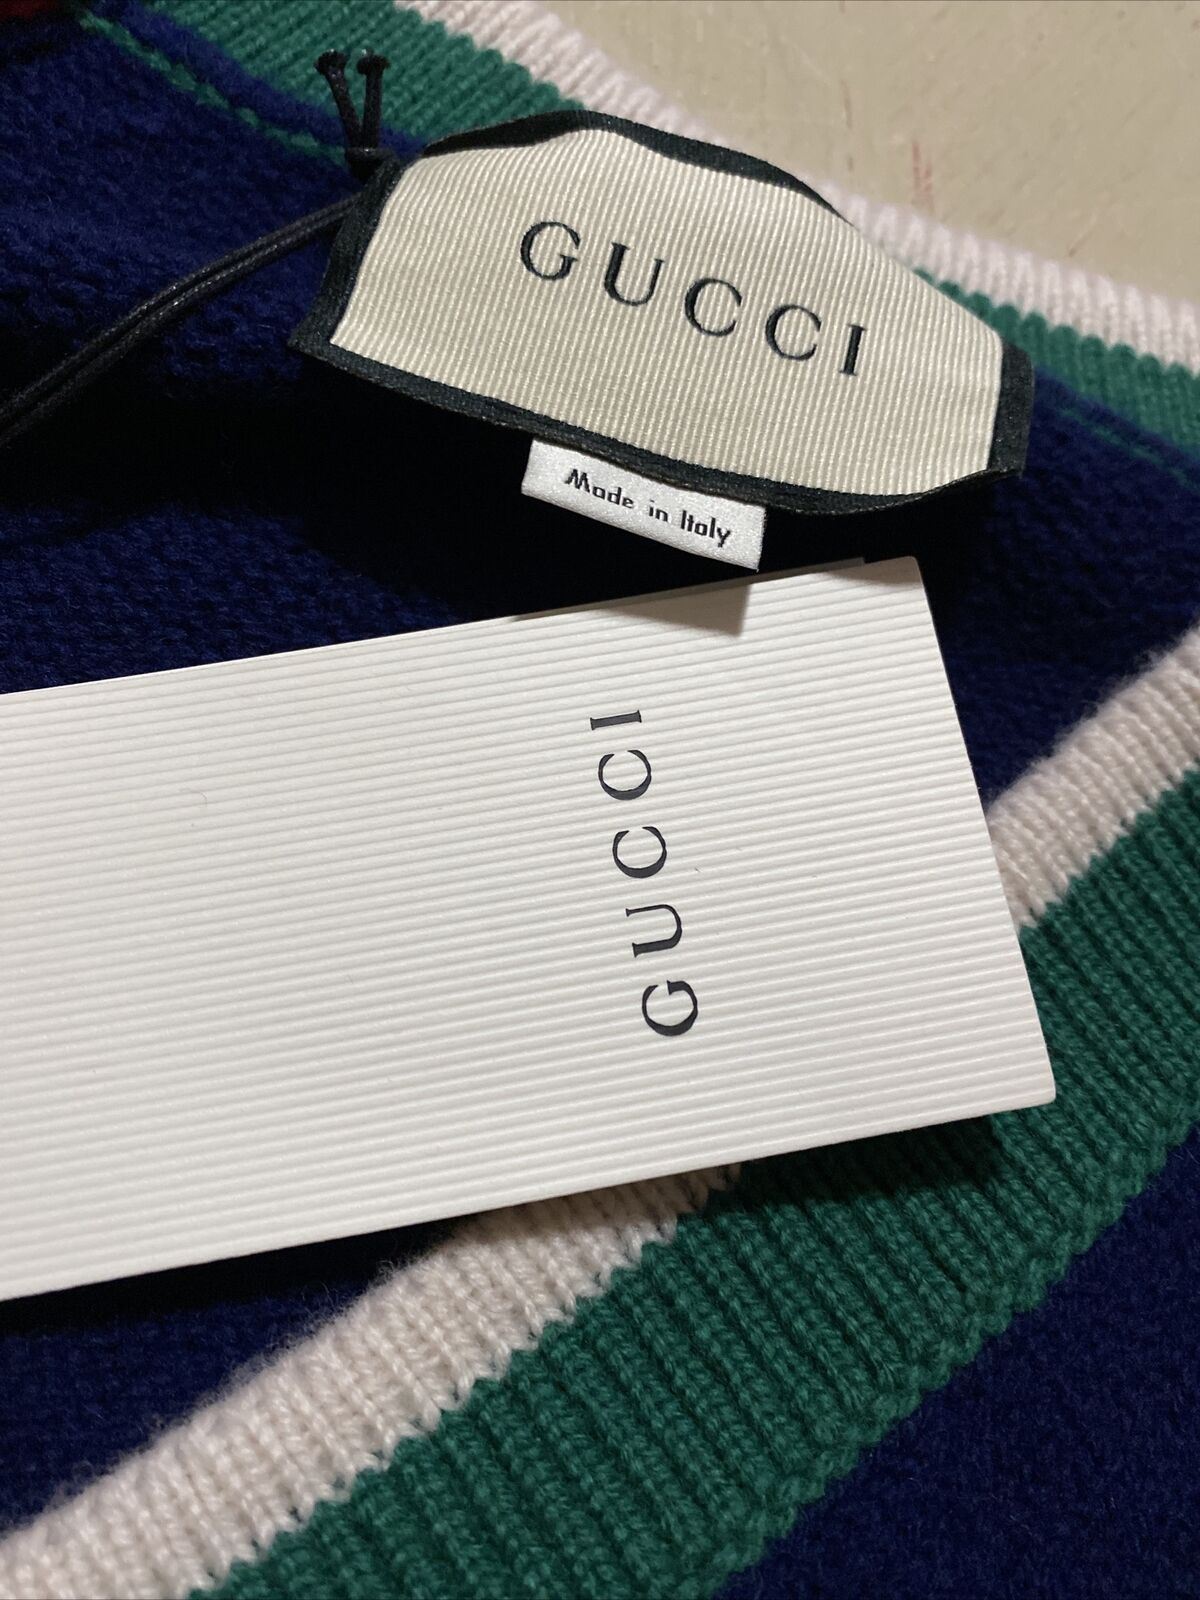 Neu mit Etikett: 1200 $ Gucci Herren-Wollpullover mit V-Ausschnitt Rot/Blau/Grün L Italien